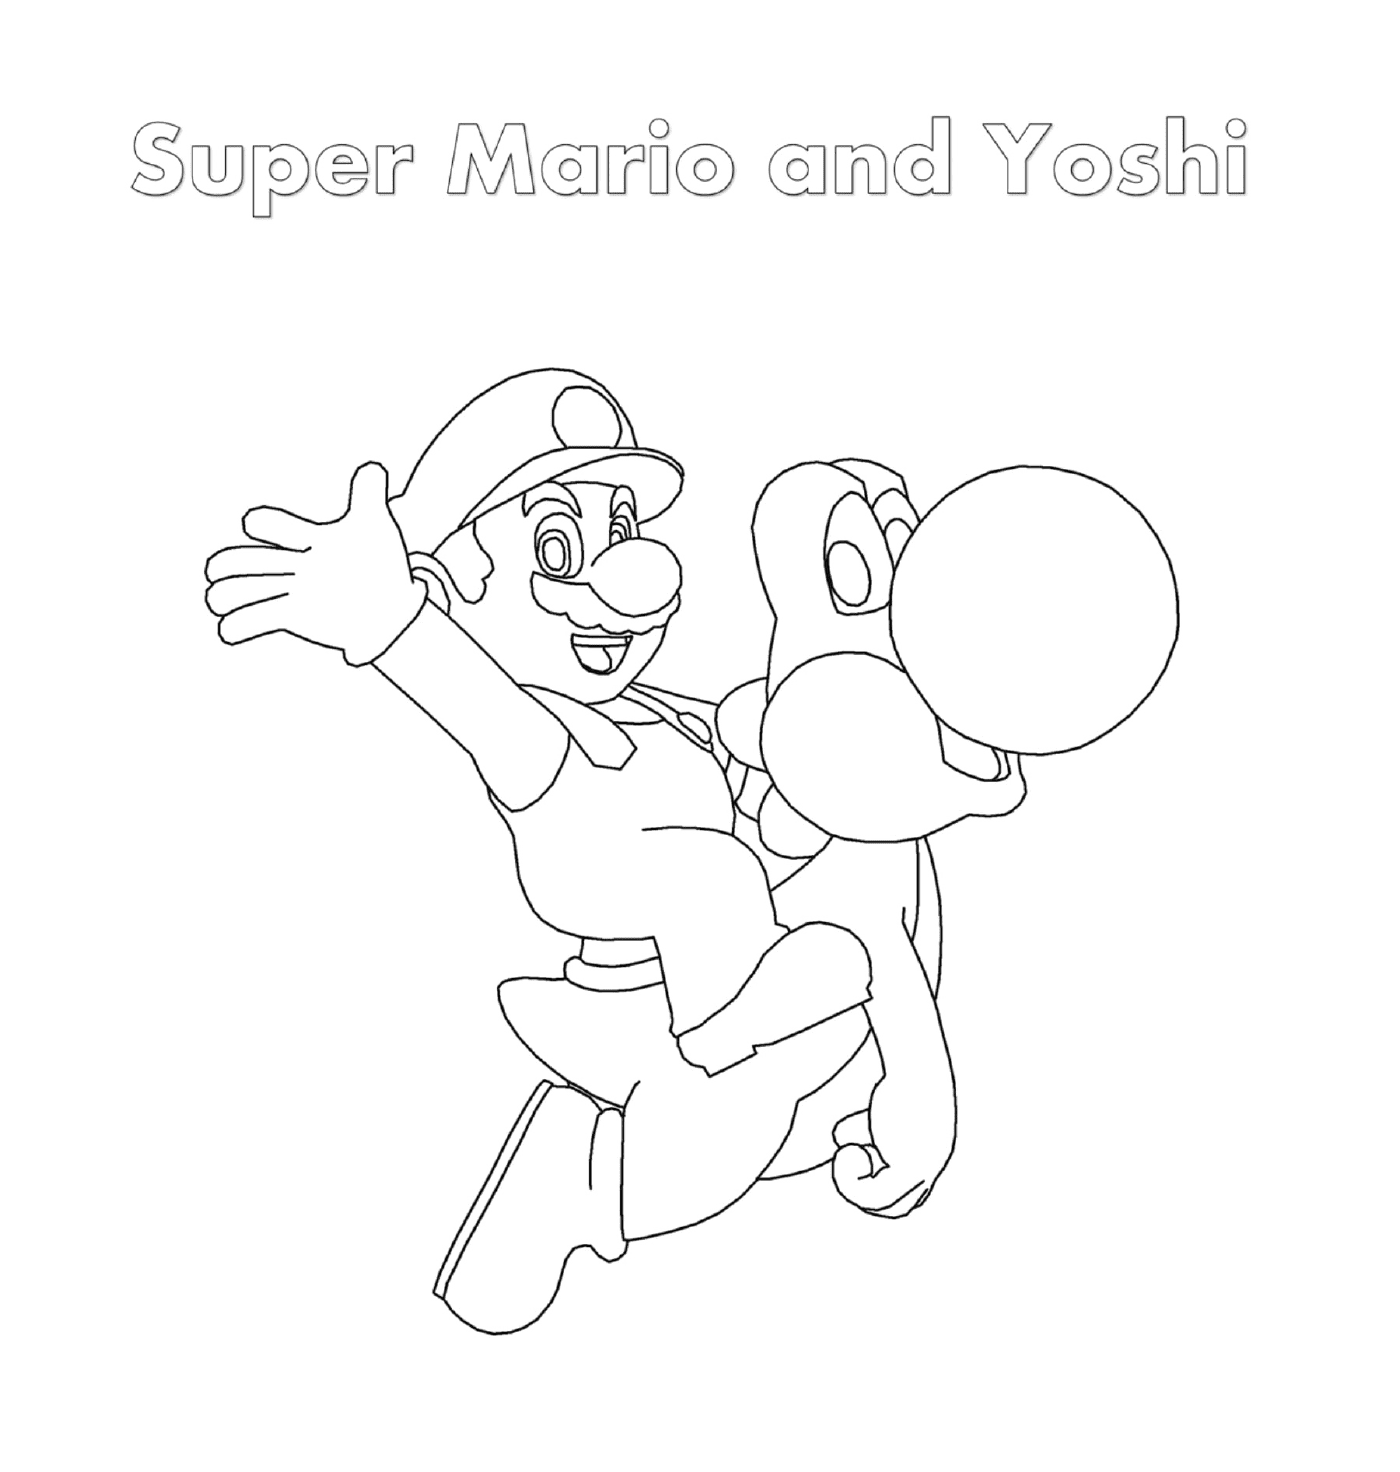  Super Mario e Yoshi Yoshi com uma pessoa segurando uma bala 